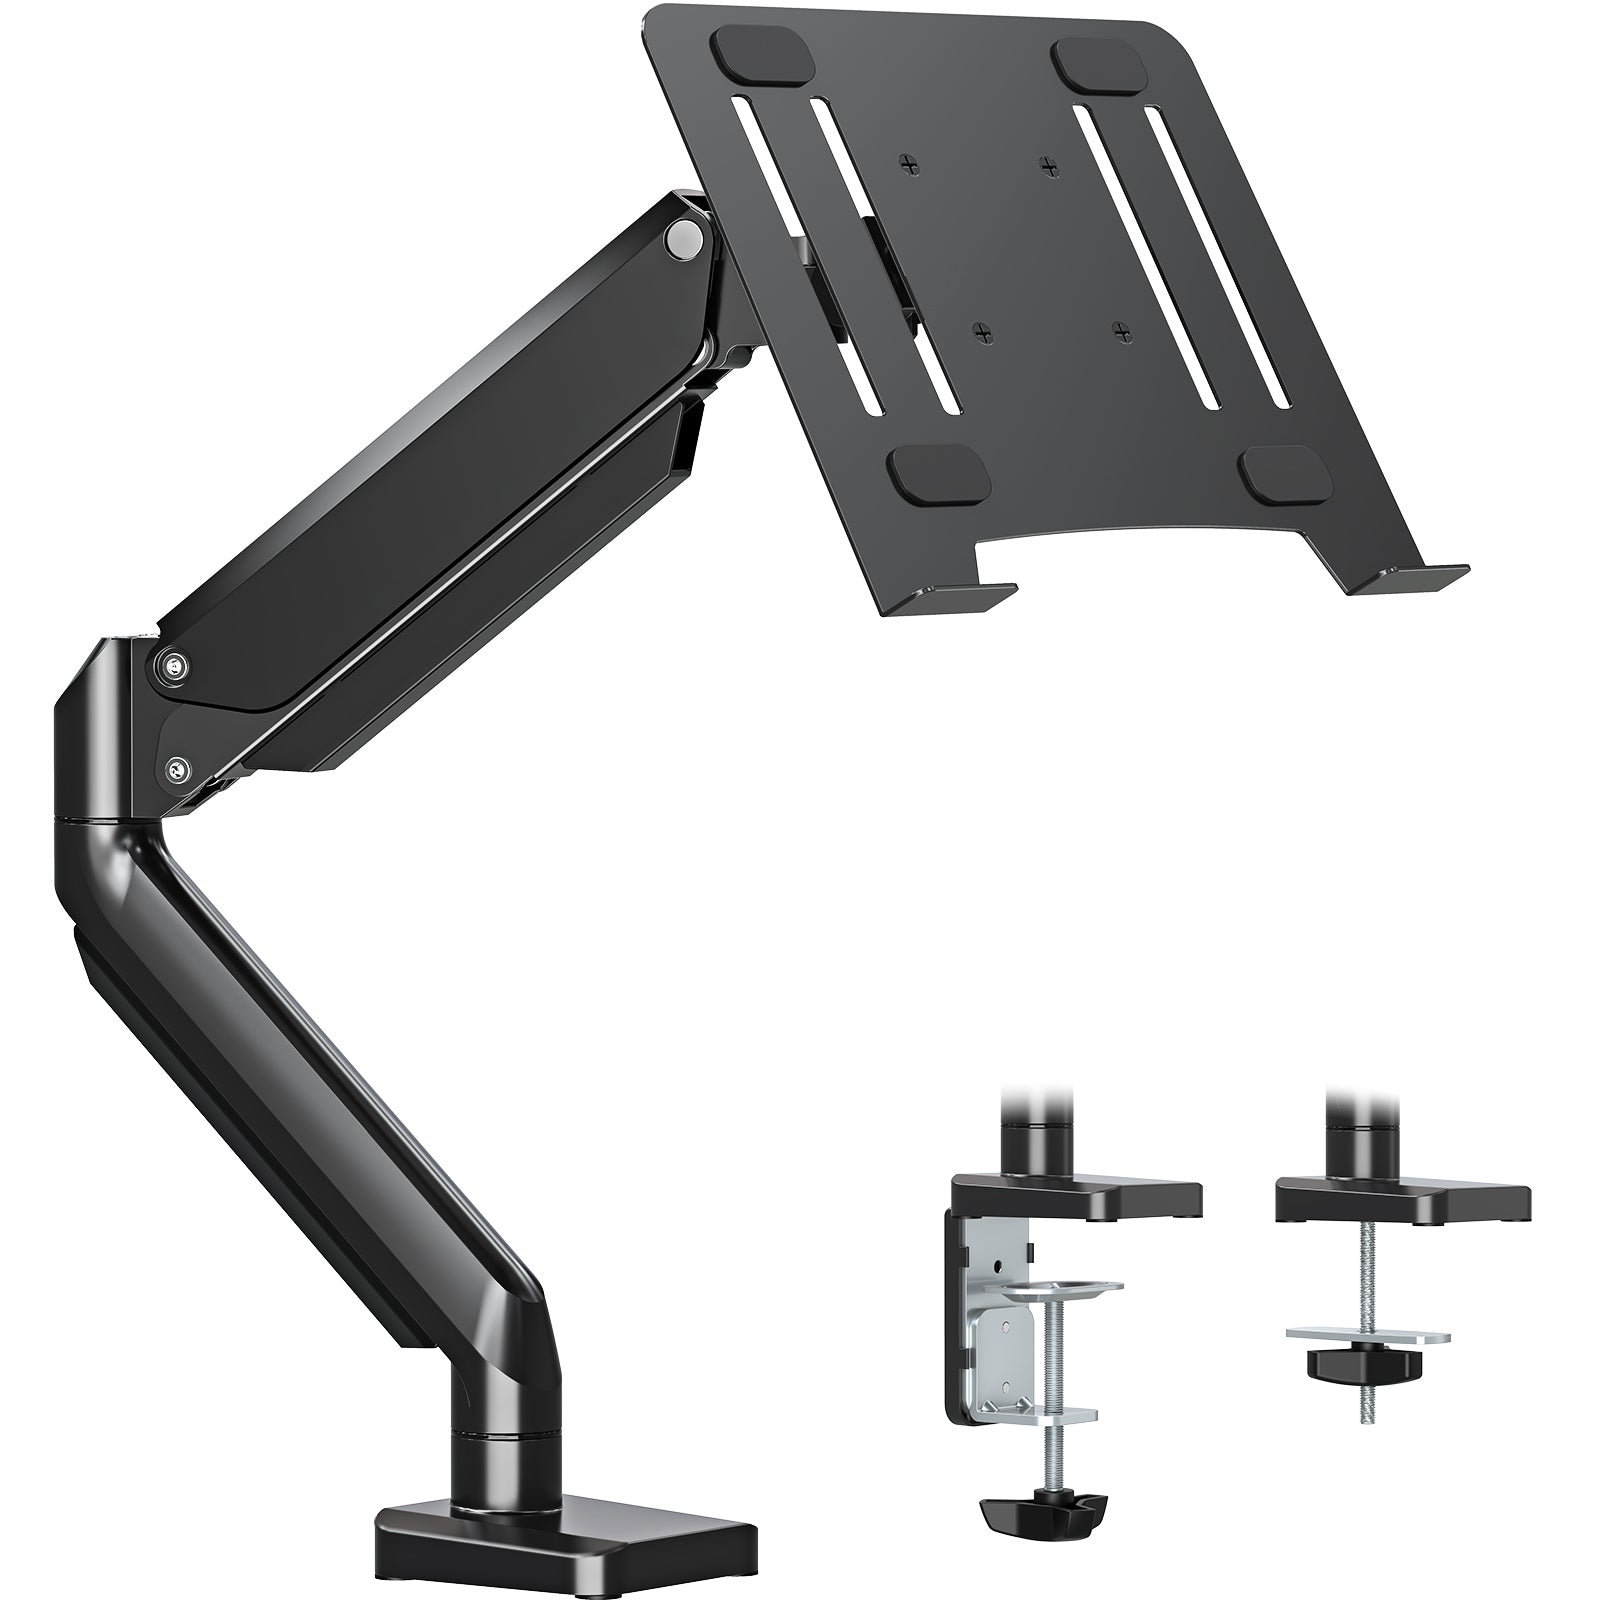 MOUNTUP Soporte de brazo para computadora portátil para escritorio con capacidad para 3,3-17,6 libras MU4007